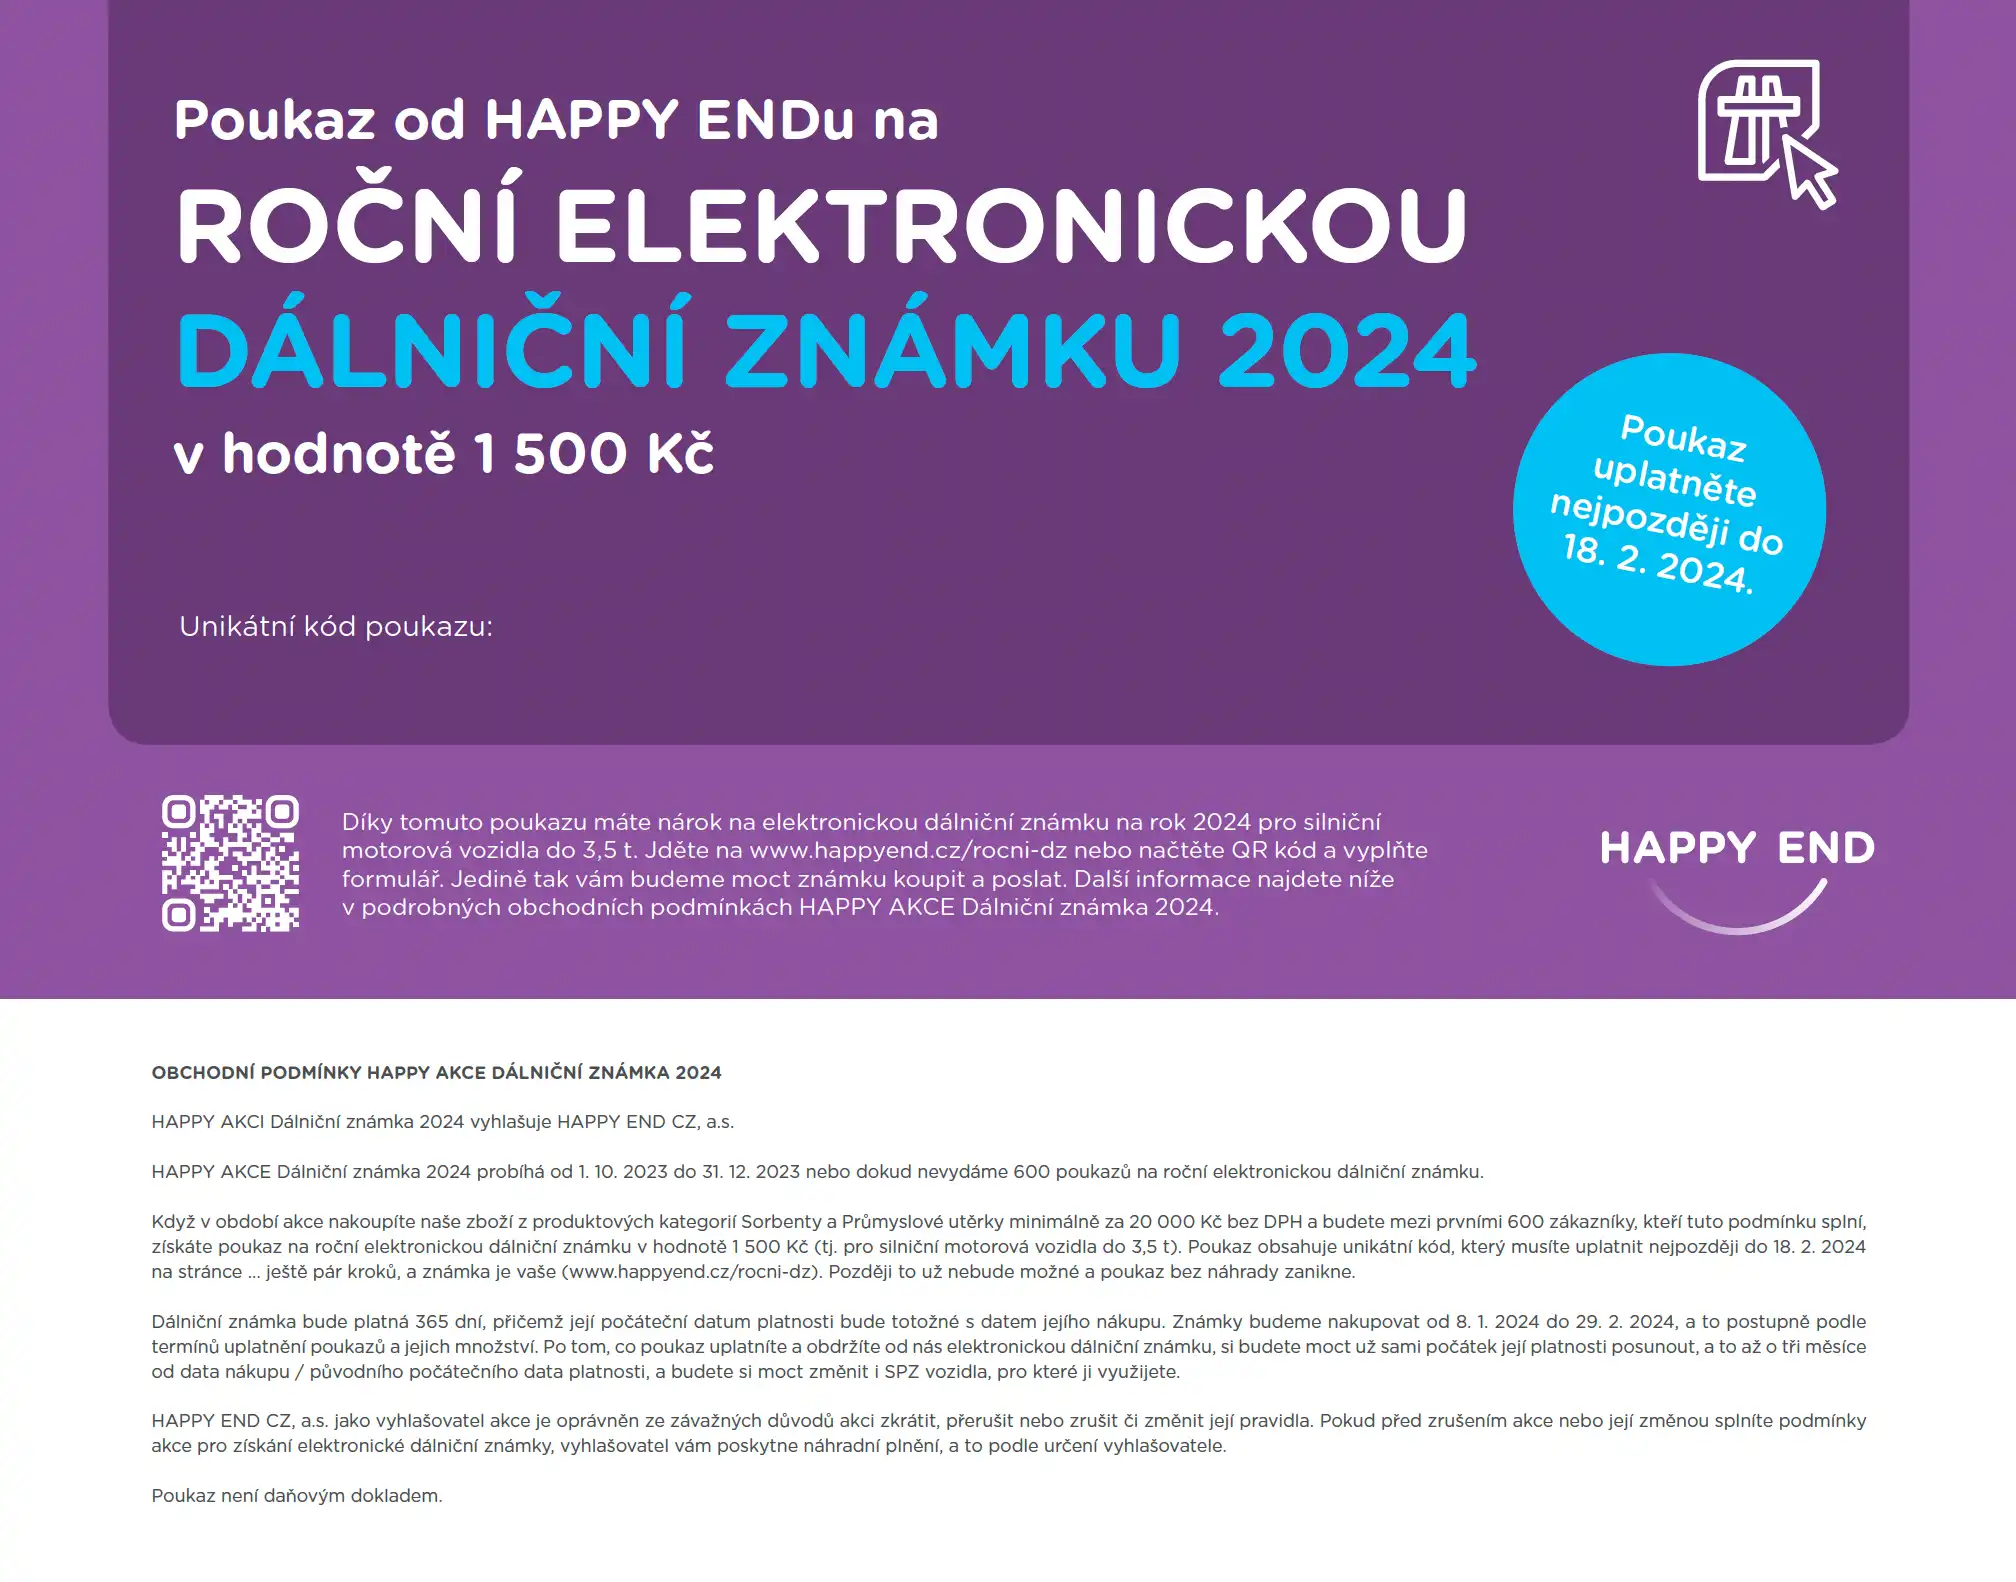 Poukaz na roční elektronickou dálniční známku 2024